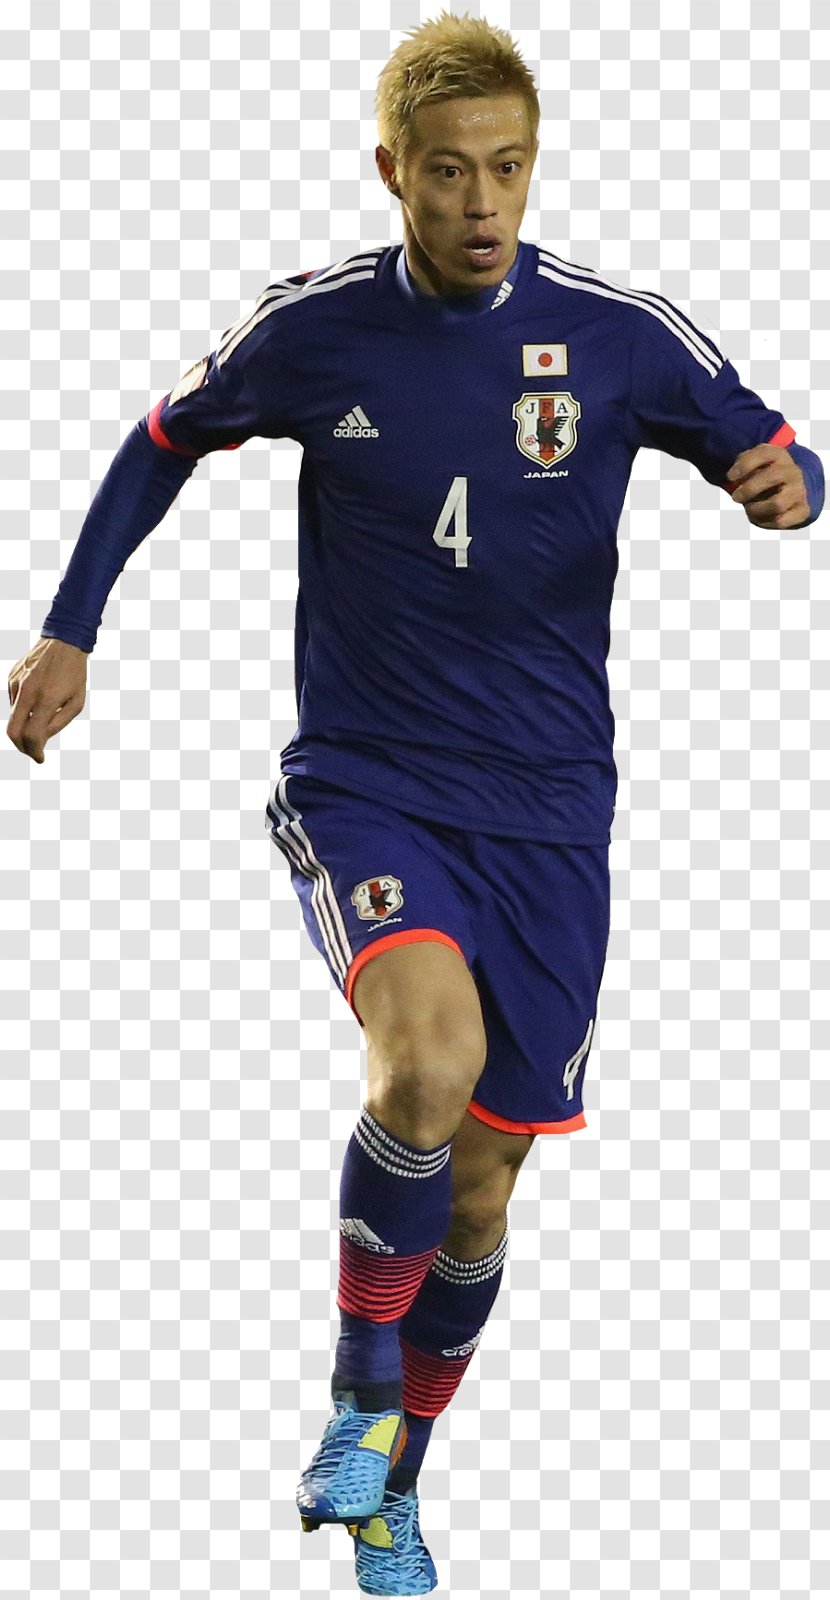 T-shirt Team Sport Uniform Outerwear Sleeve - Soccer Player - Keisuke Honda Transparent PNG